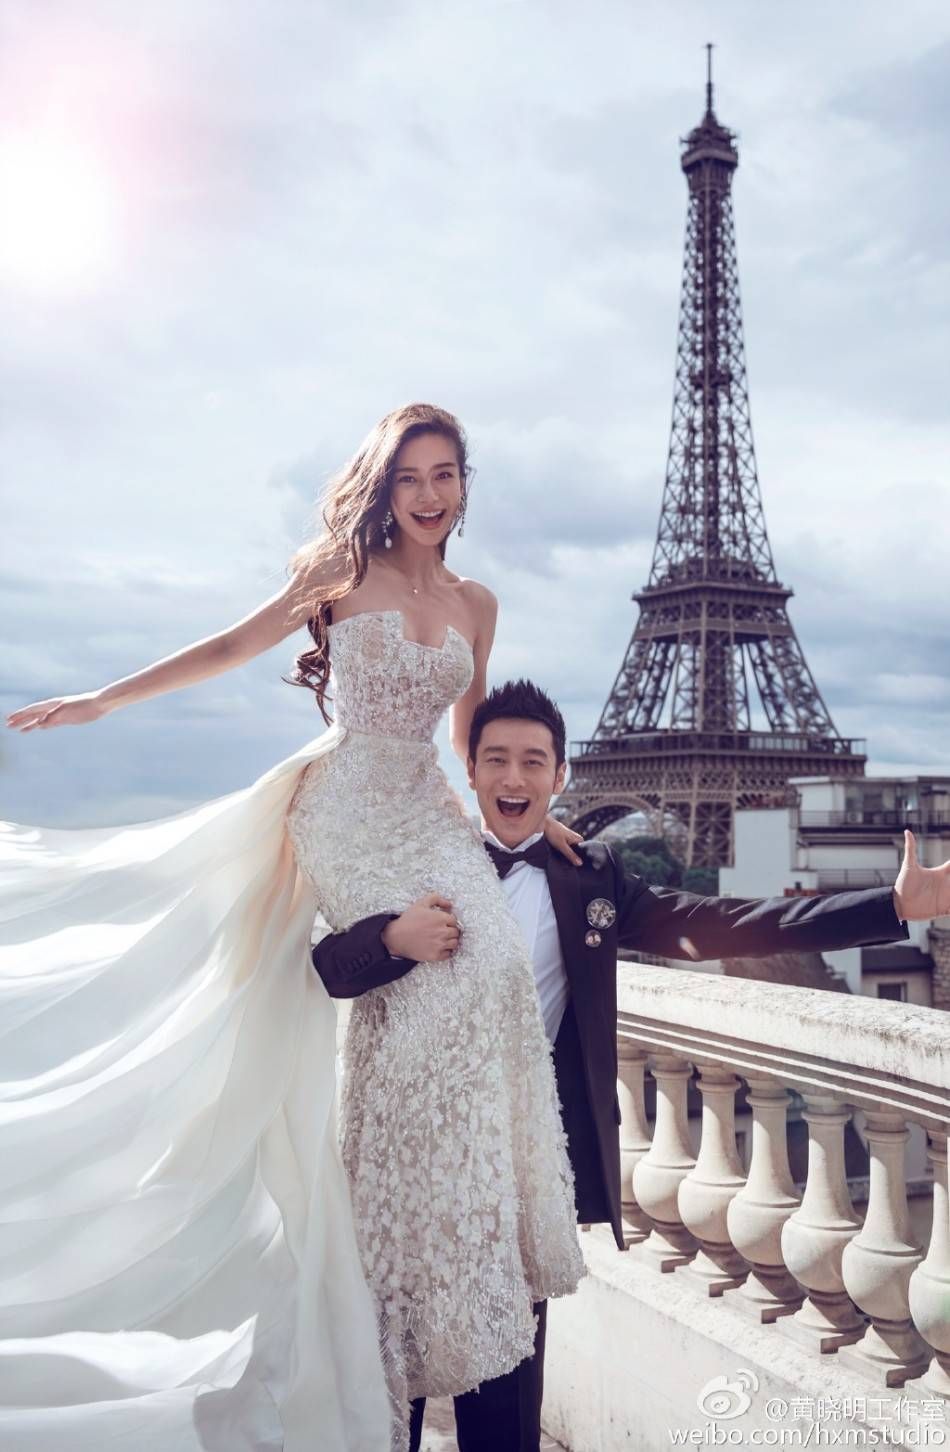 Huỳnh Hiểu Minh và Angelababy từng là cặp đôi nổi tiếng nhất nhì châu Á bởi chuyện tình đẹp như mơ